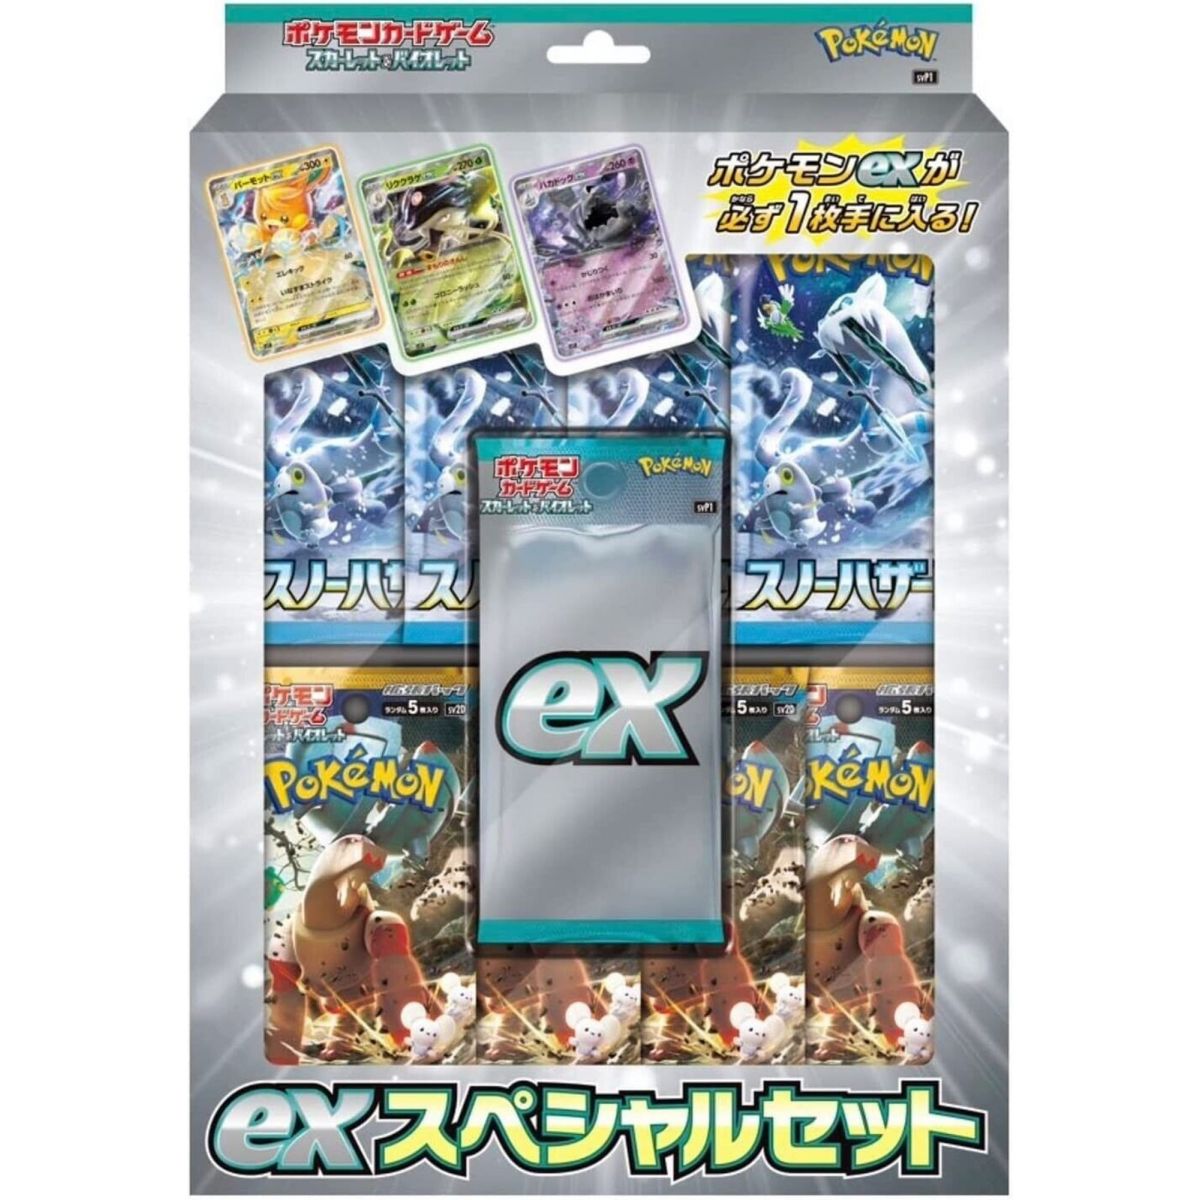 Pokémon - Box - Pokémon Scarlet & Violet ex Special Set [SVP1]